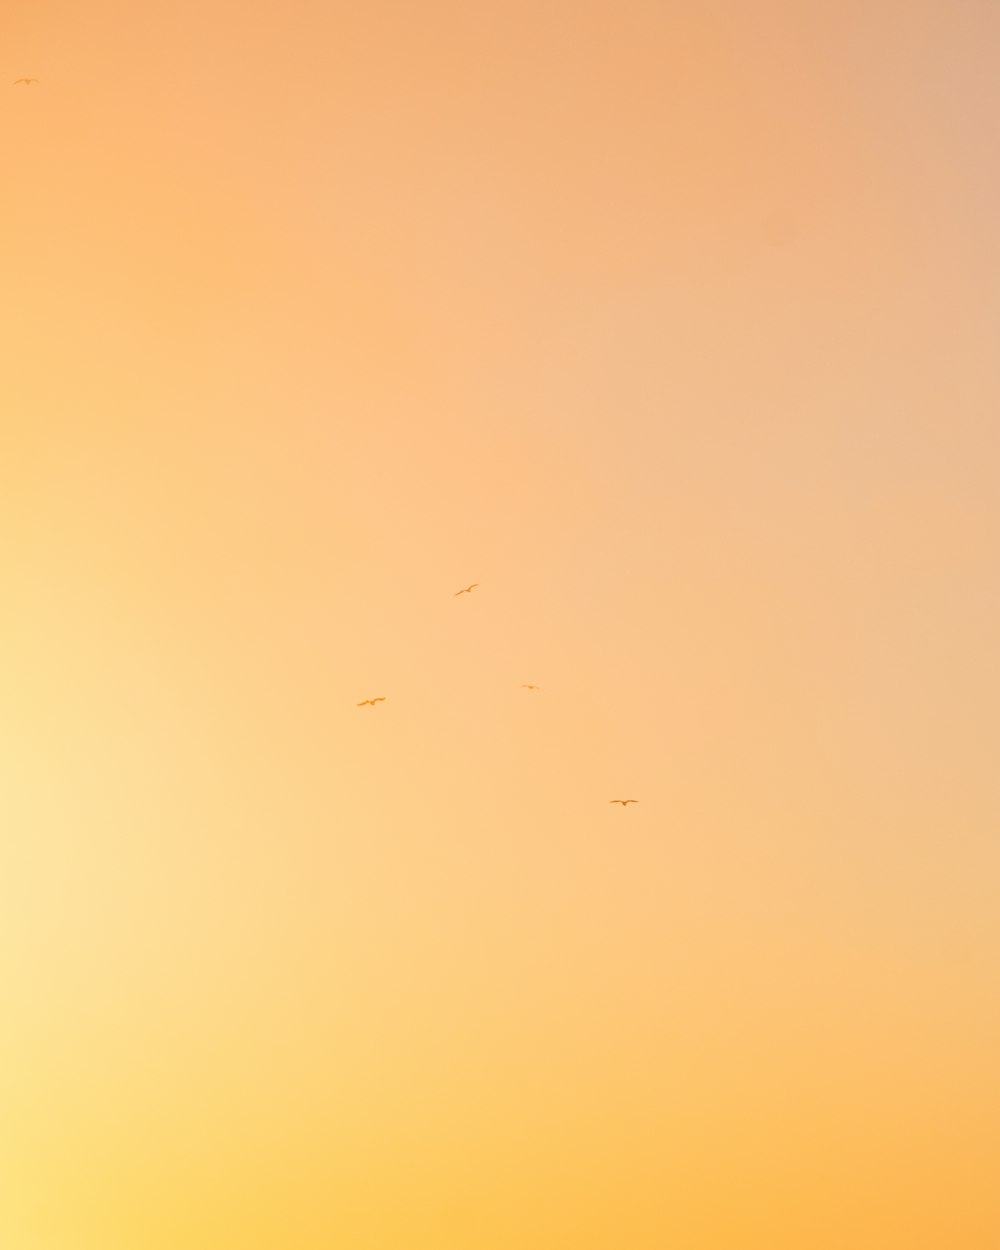 um grupo de pássaros voando no céu ao pôr do sol